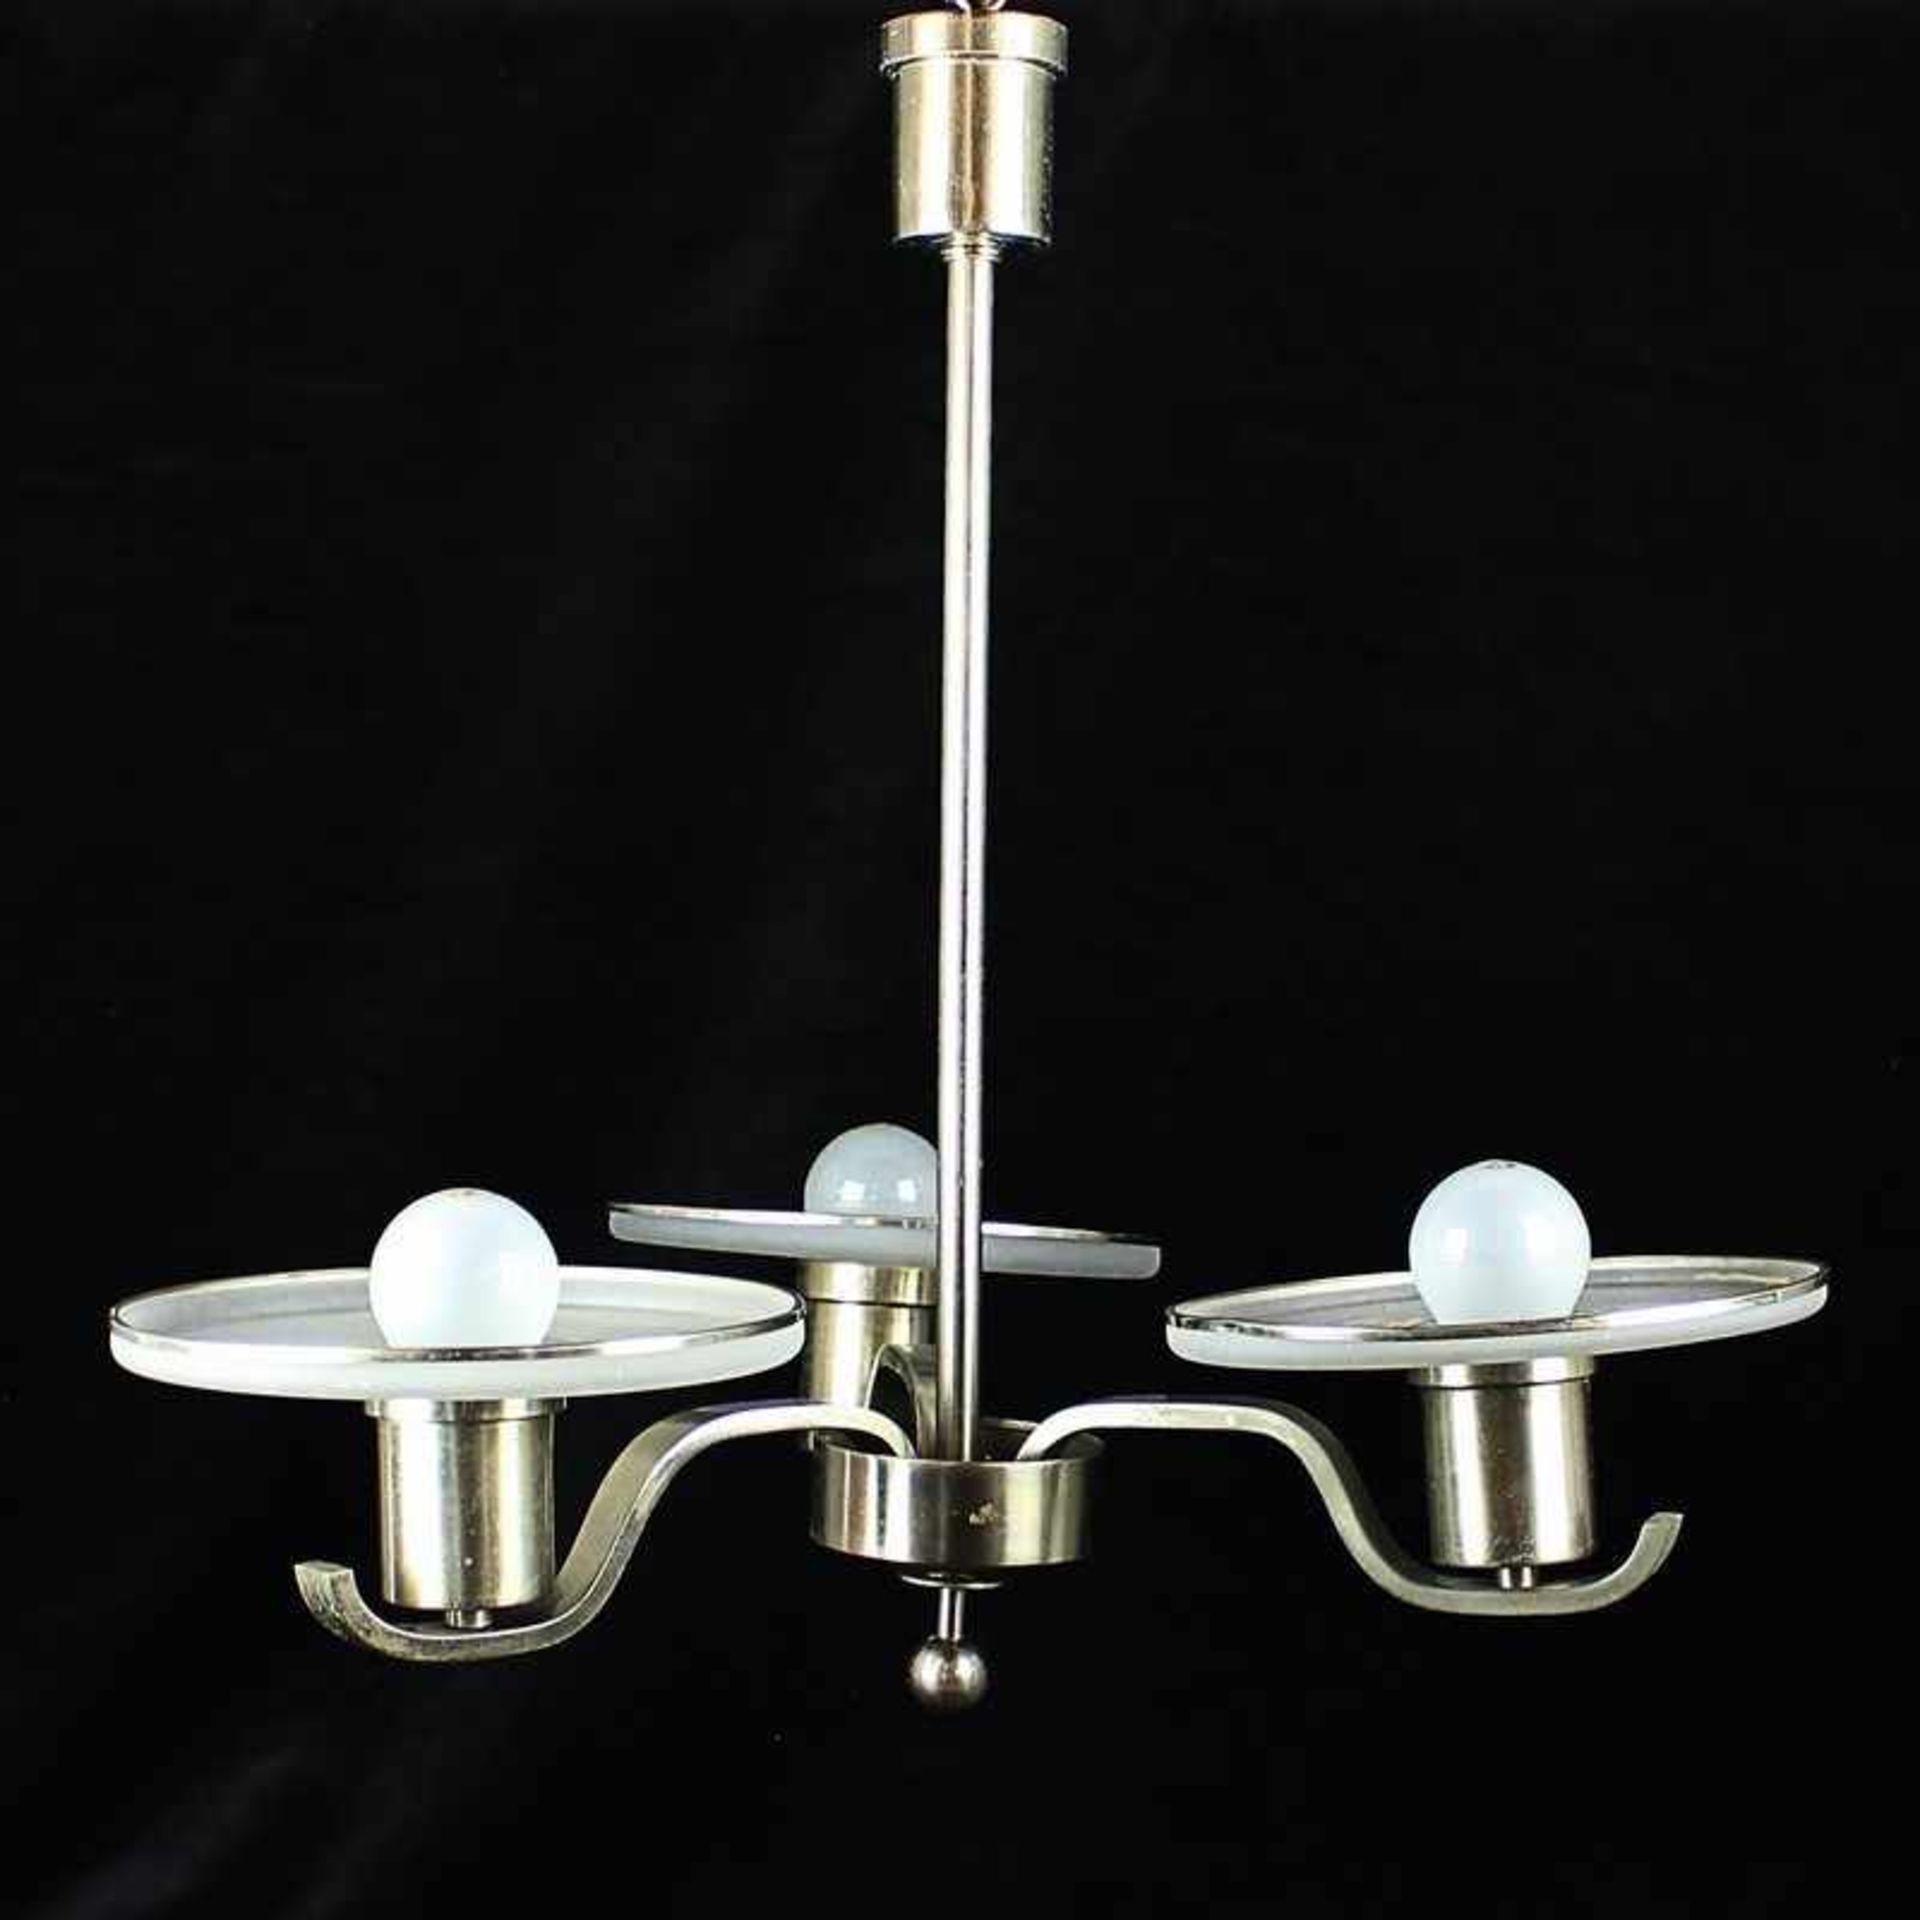 Deckenlampe Metall/Glas, 3-flammig, lang gestreckter Schaft, riemenförmige Leuchterarme, zylindr.